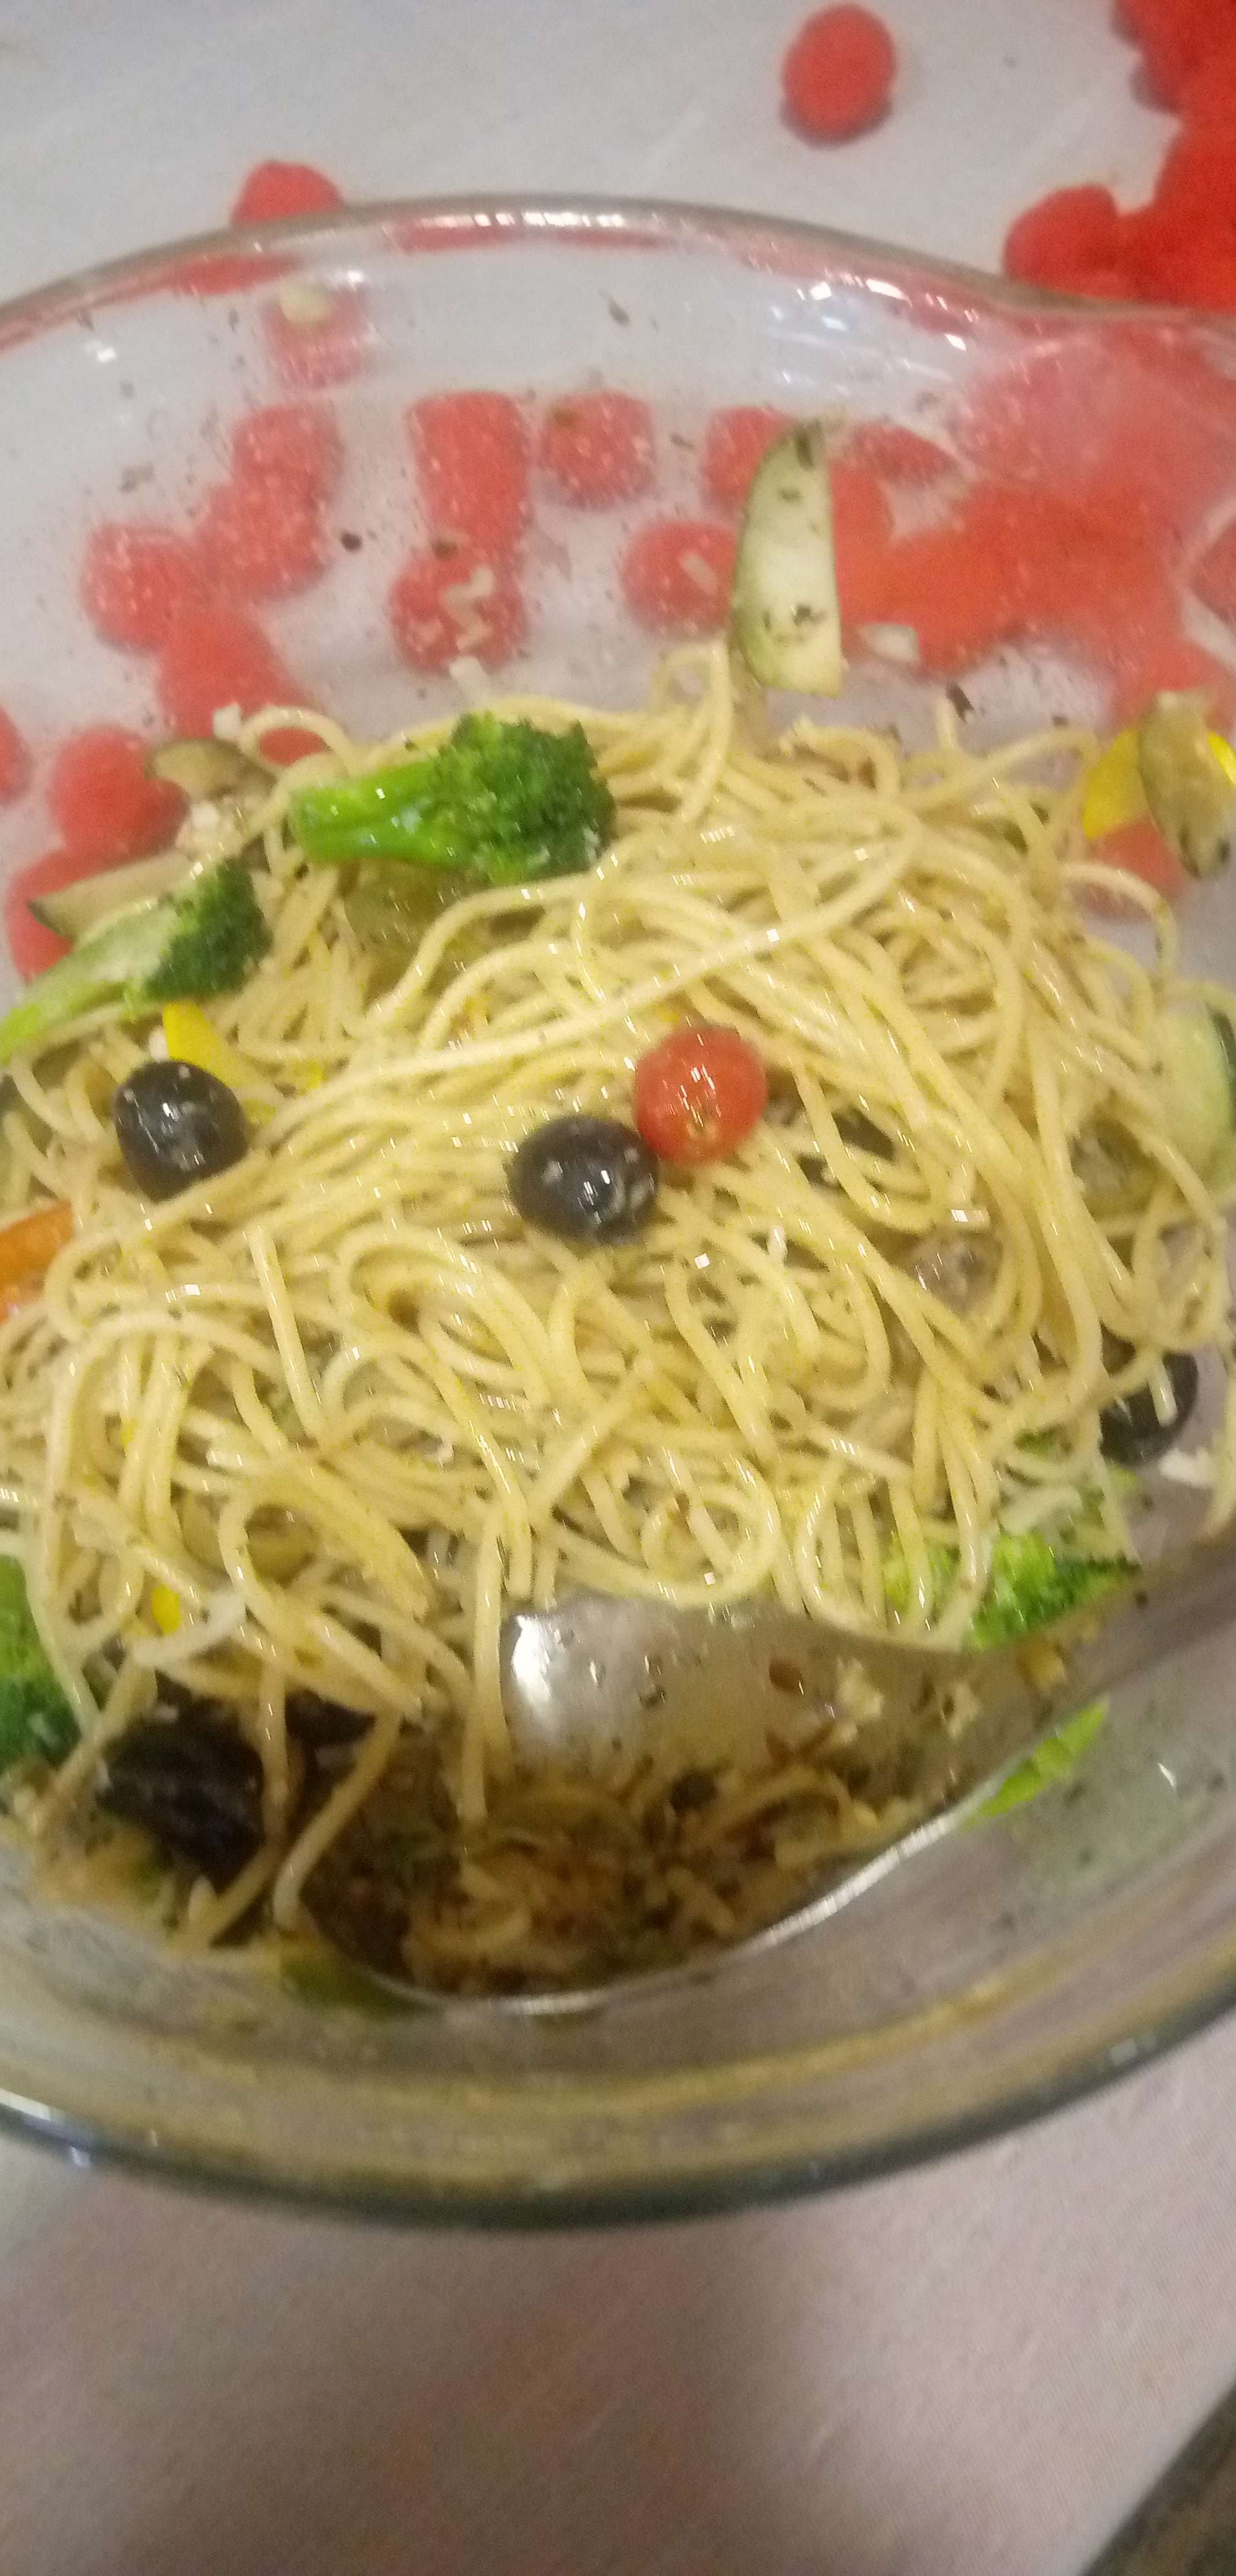 Delicious Spaghetti aglio e olio prepared by COOX